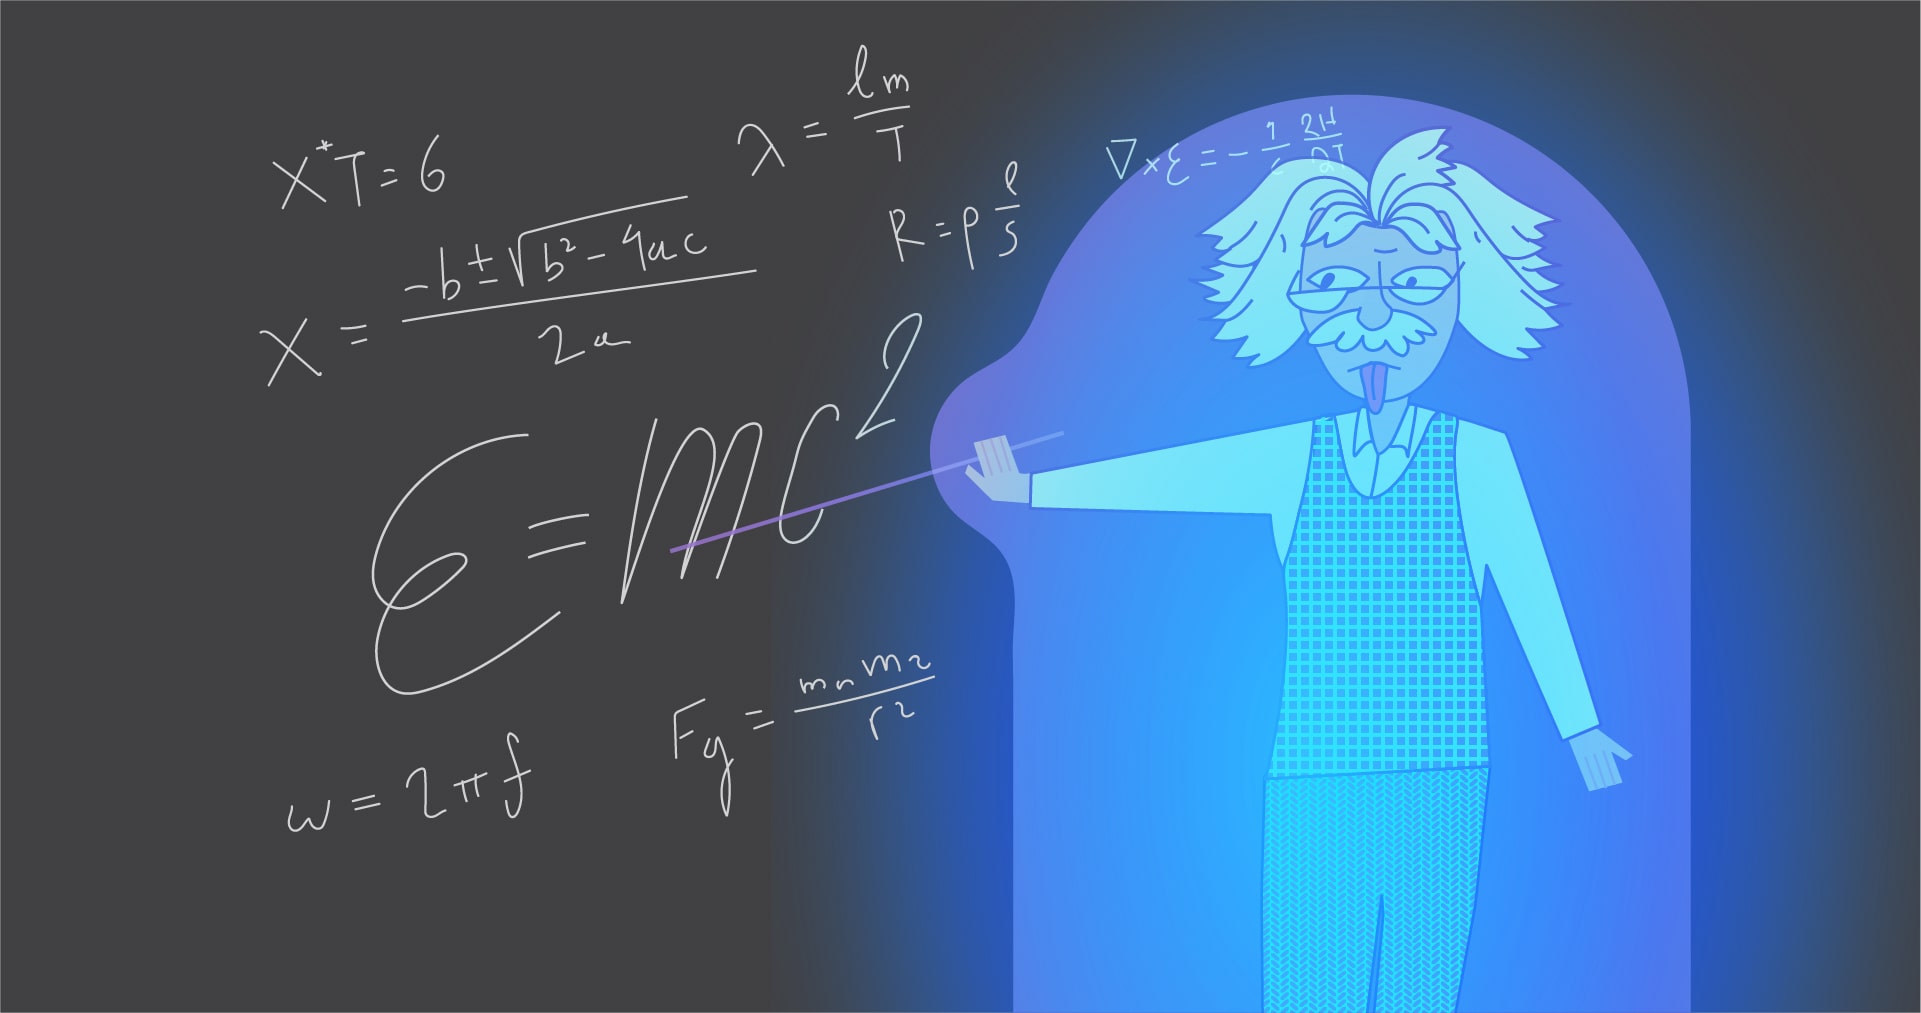 Μάθημα με τον Αϊνστάιν μέσω Ολογράμματος